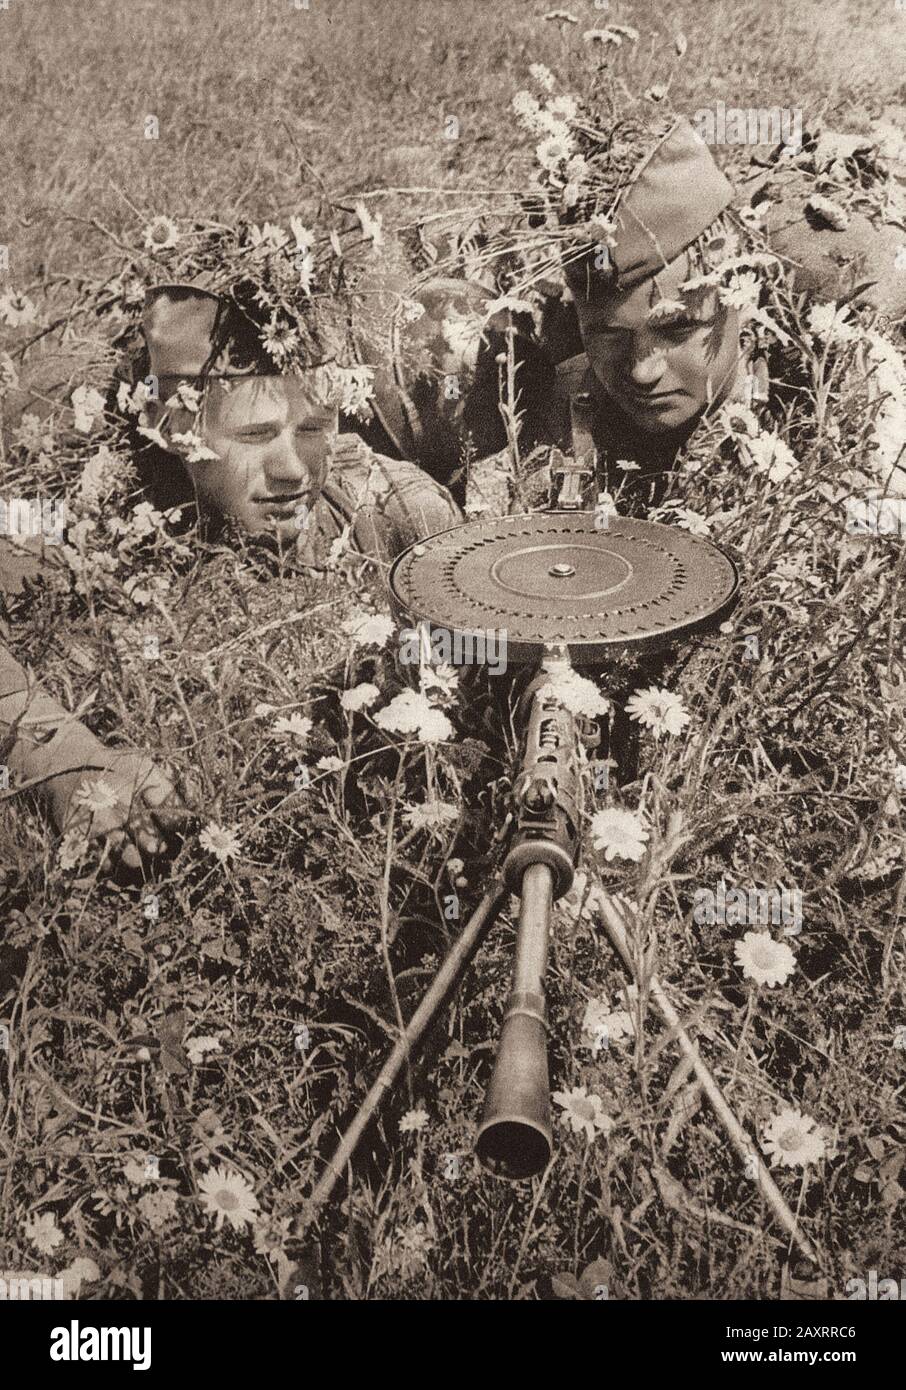 Esercito Rosso. Dal libro di propaganda sovietico del 1937. Mitragliatrici dell'esercito sovietico. Mitragliatrice Degtyaryov (DP-28) Foto Stock